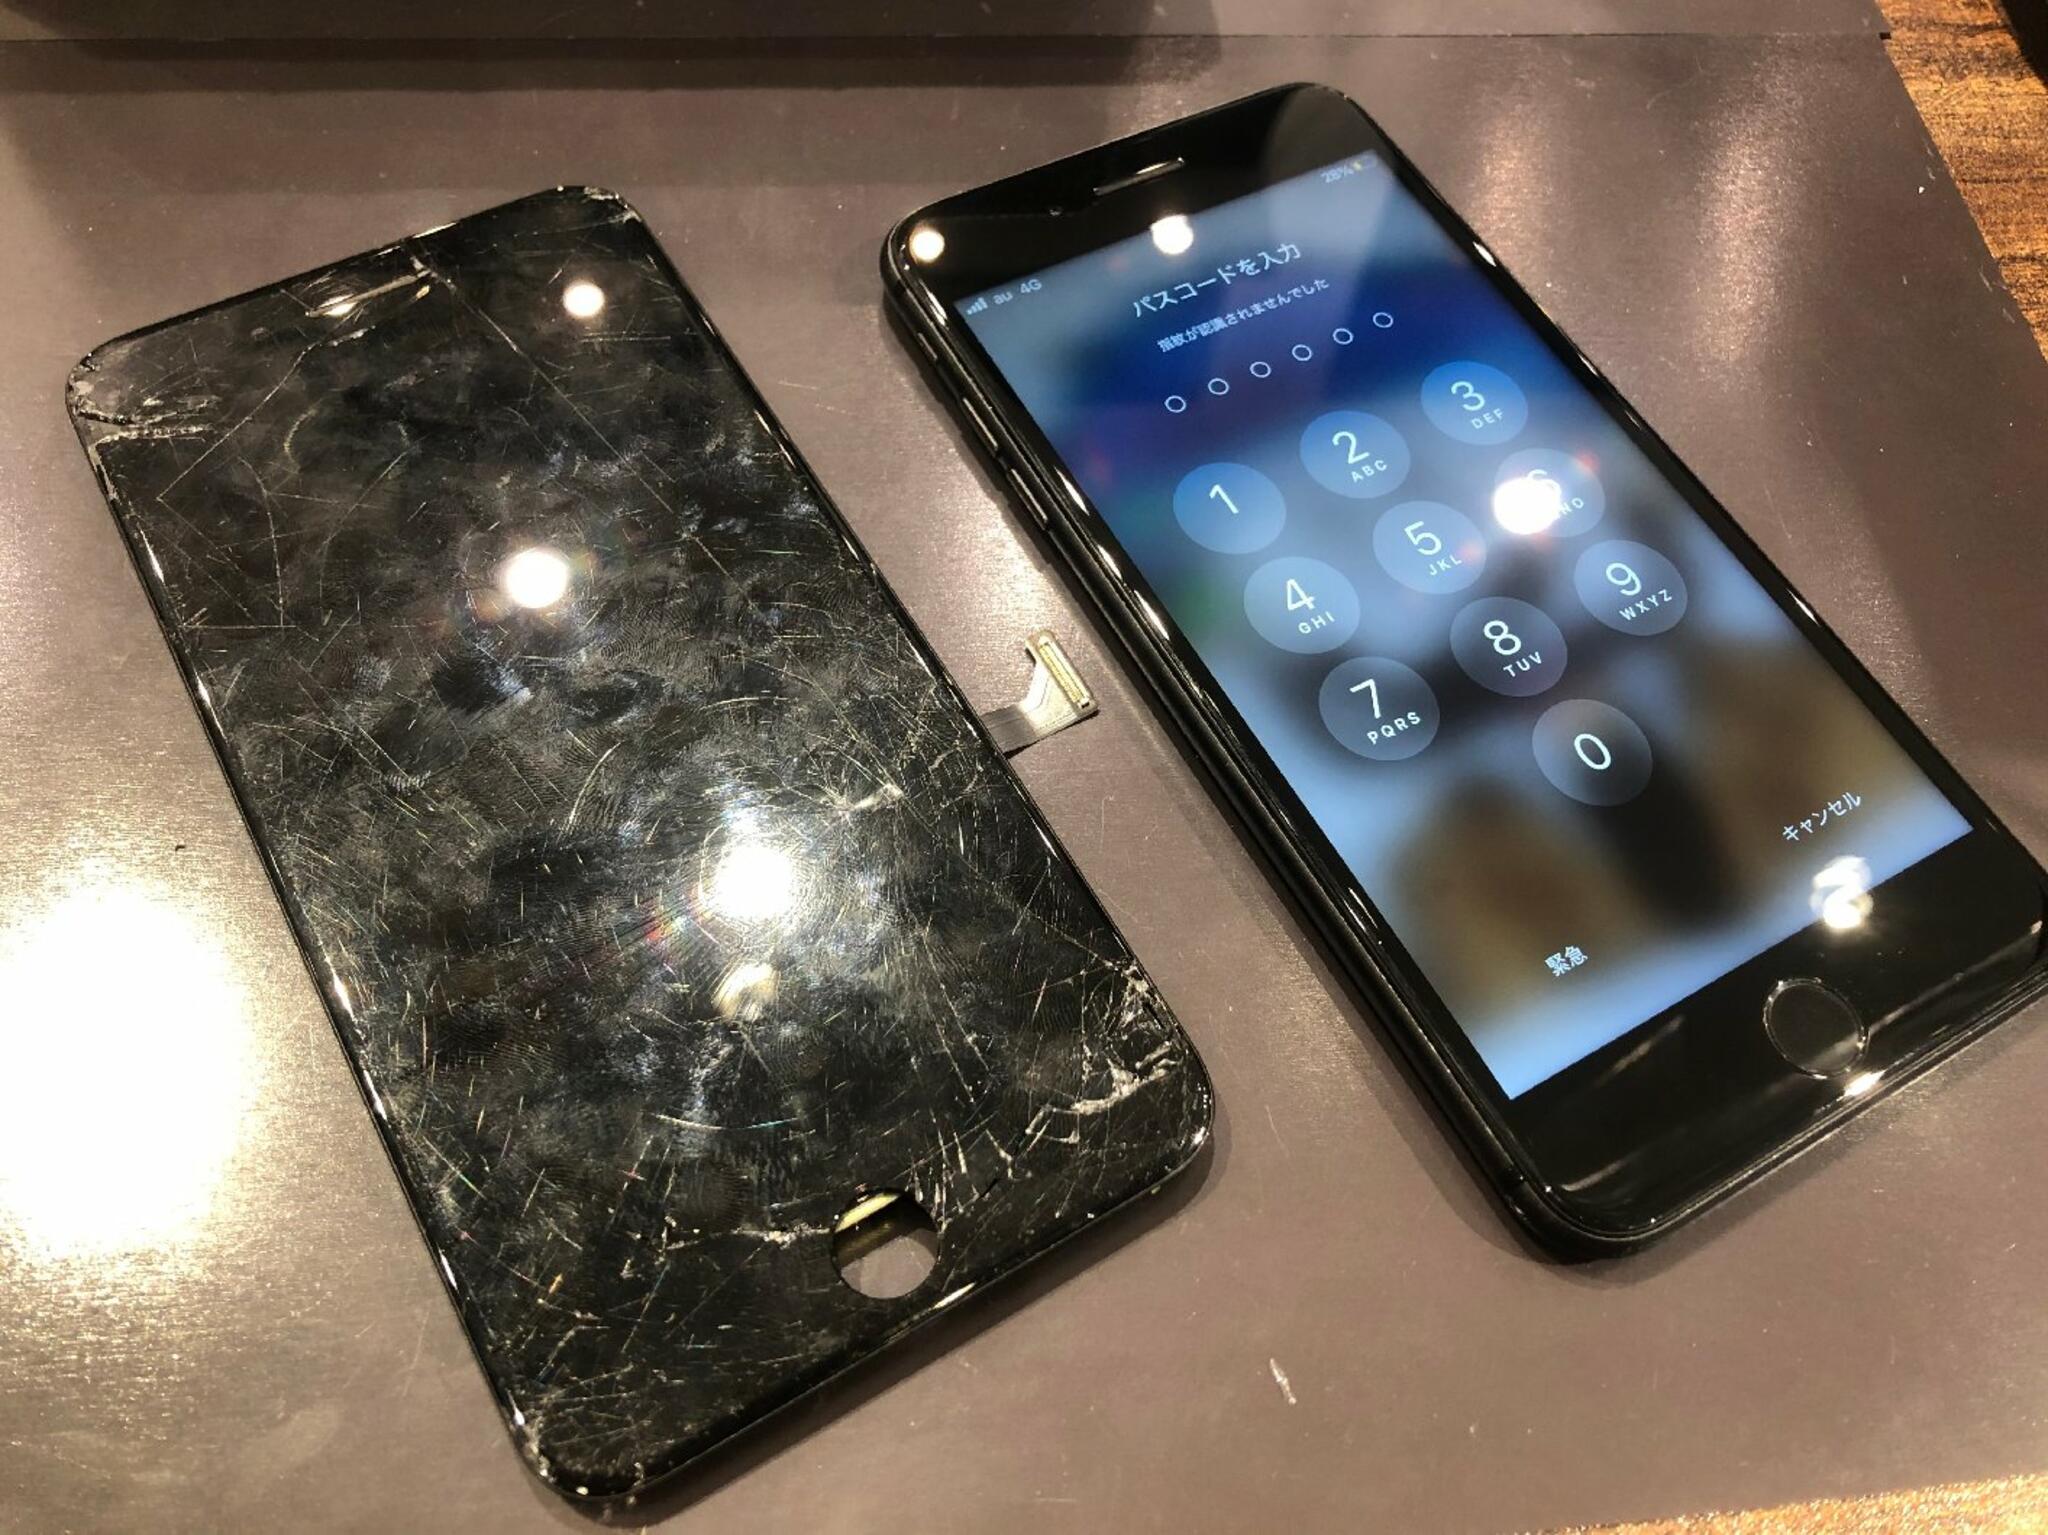 iPhone・iPad・Switch修理店 スマートクール イオンモール広島祇園店からのお知らせ(iPhoneの画面割れ放置はやめましょう)に関する写真